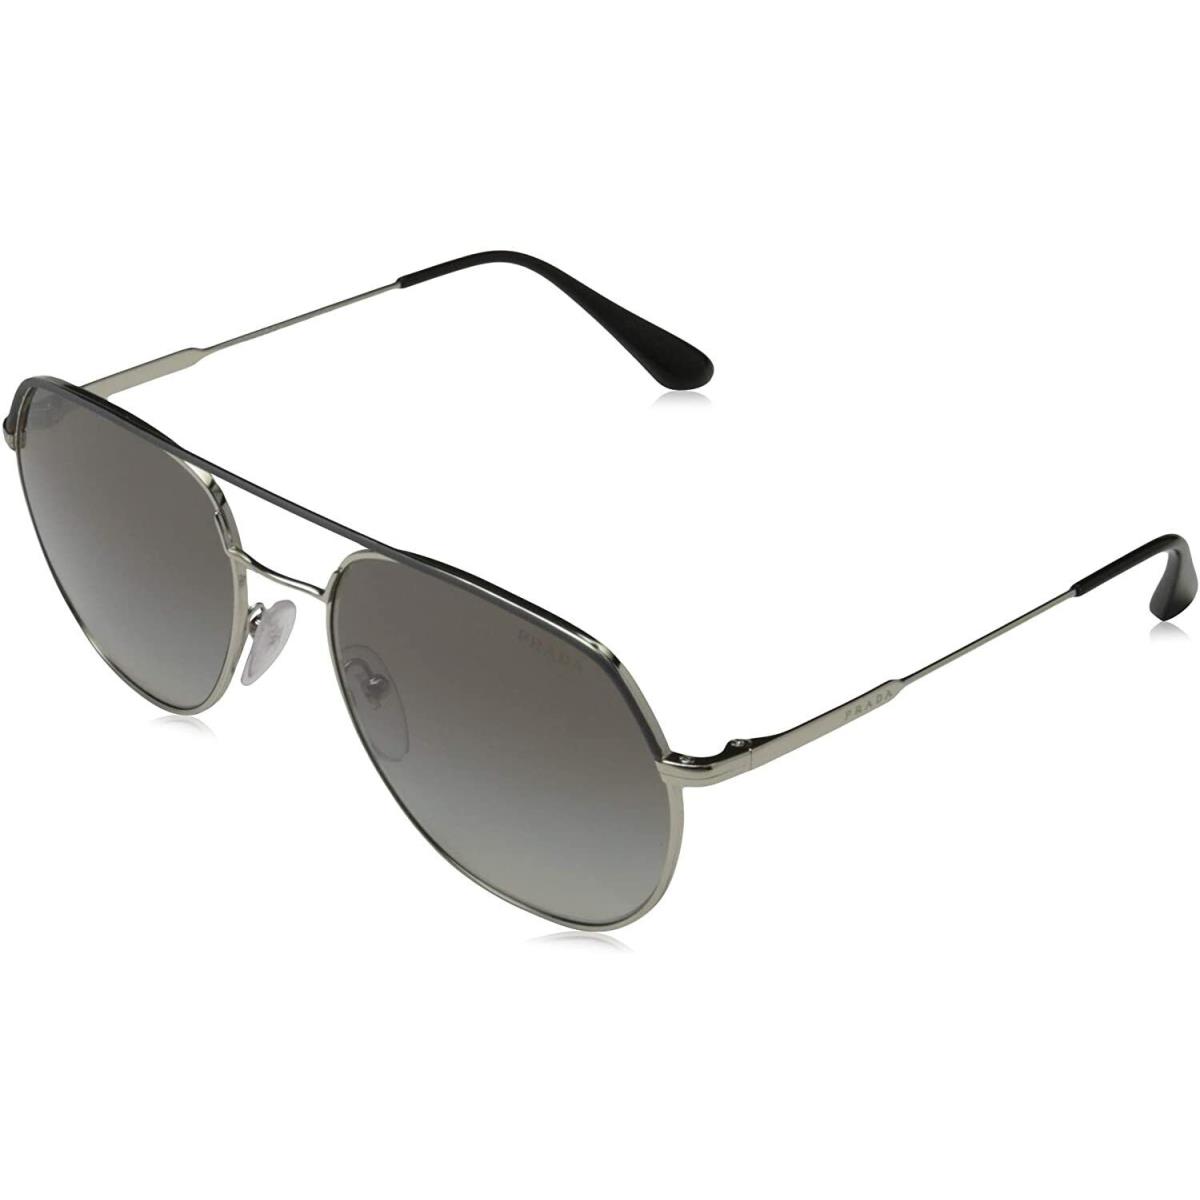 Prada Sunglasses 0PR 55US 3295O0 57 140 Pilot Eyeglasses